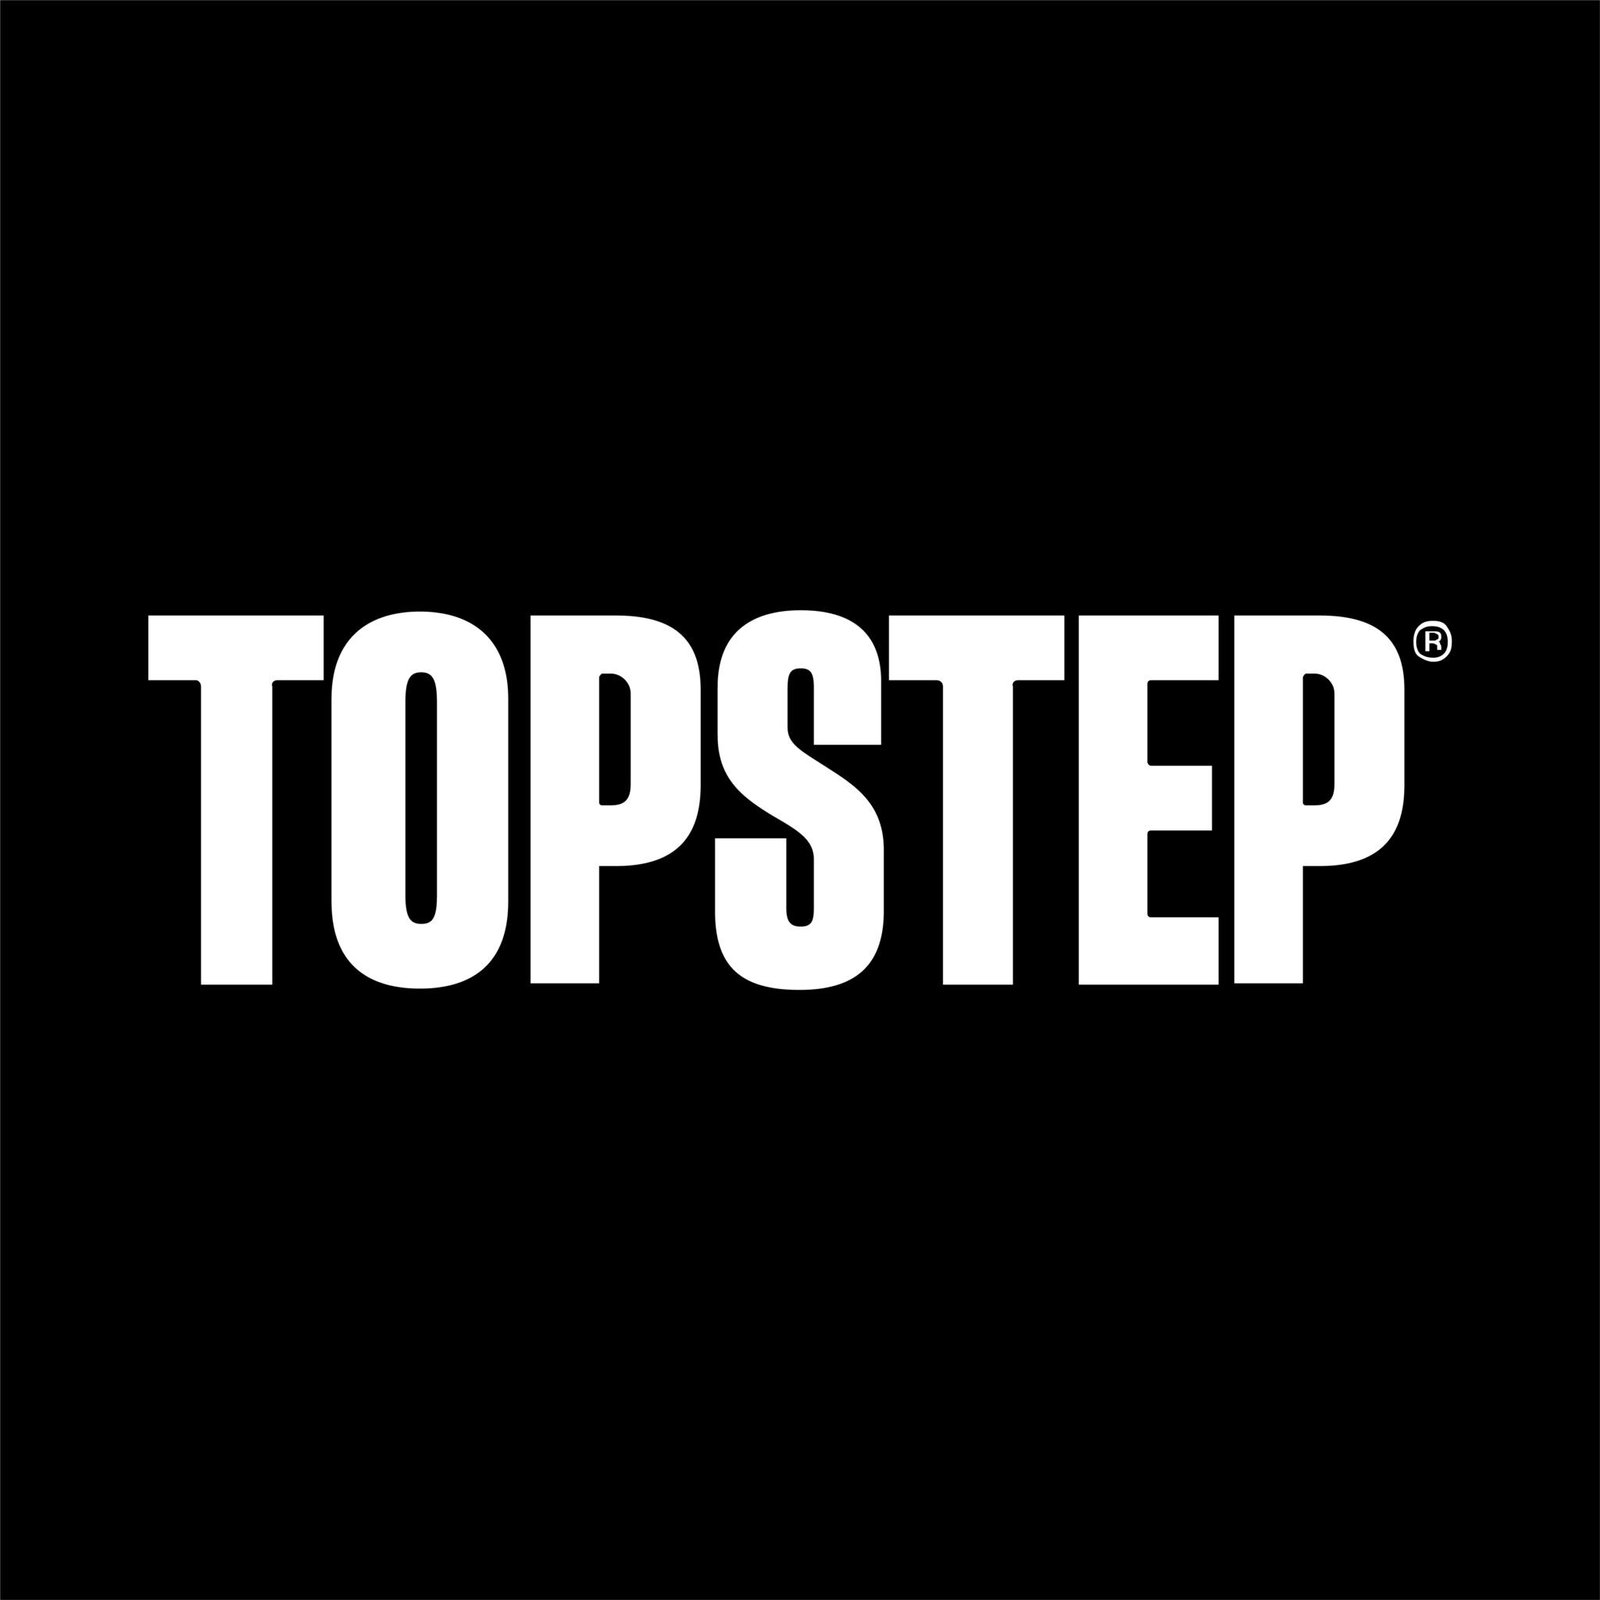 topstep-logo-01-2048x2048.jpg